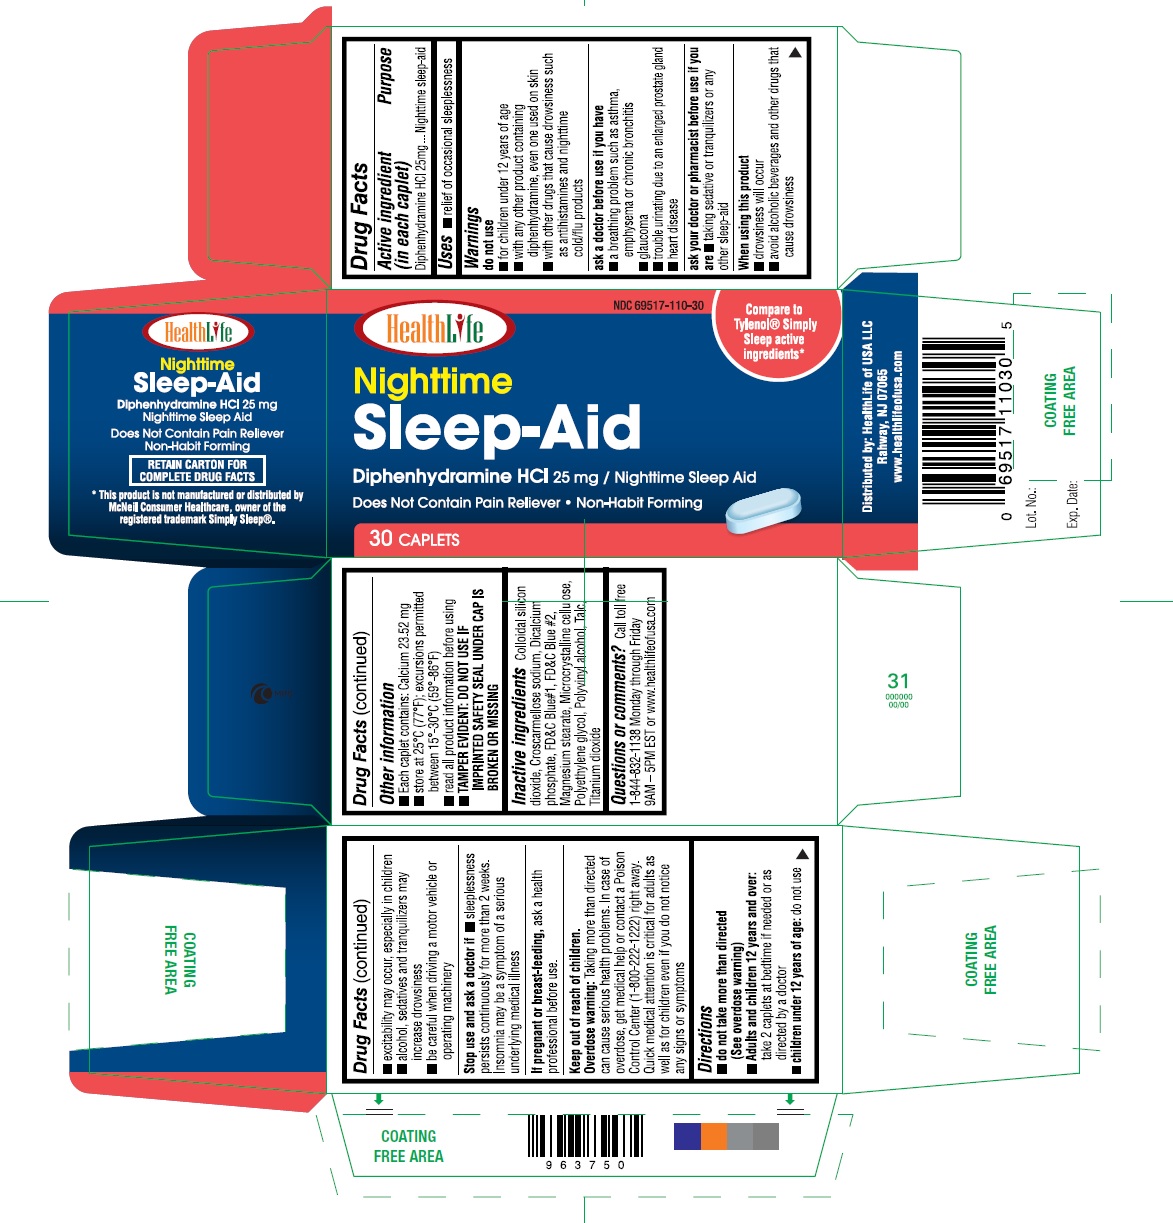 Sleep-Aid